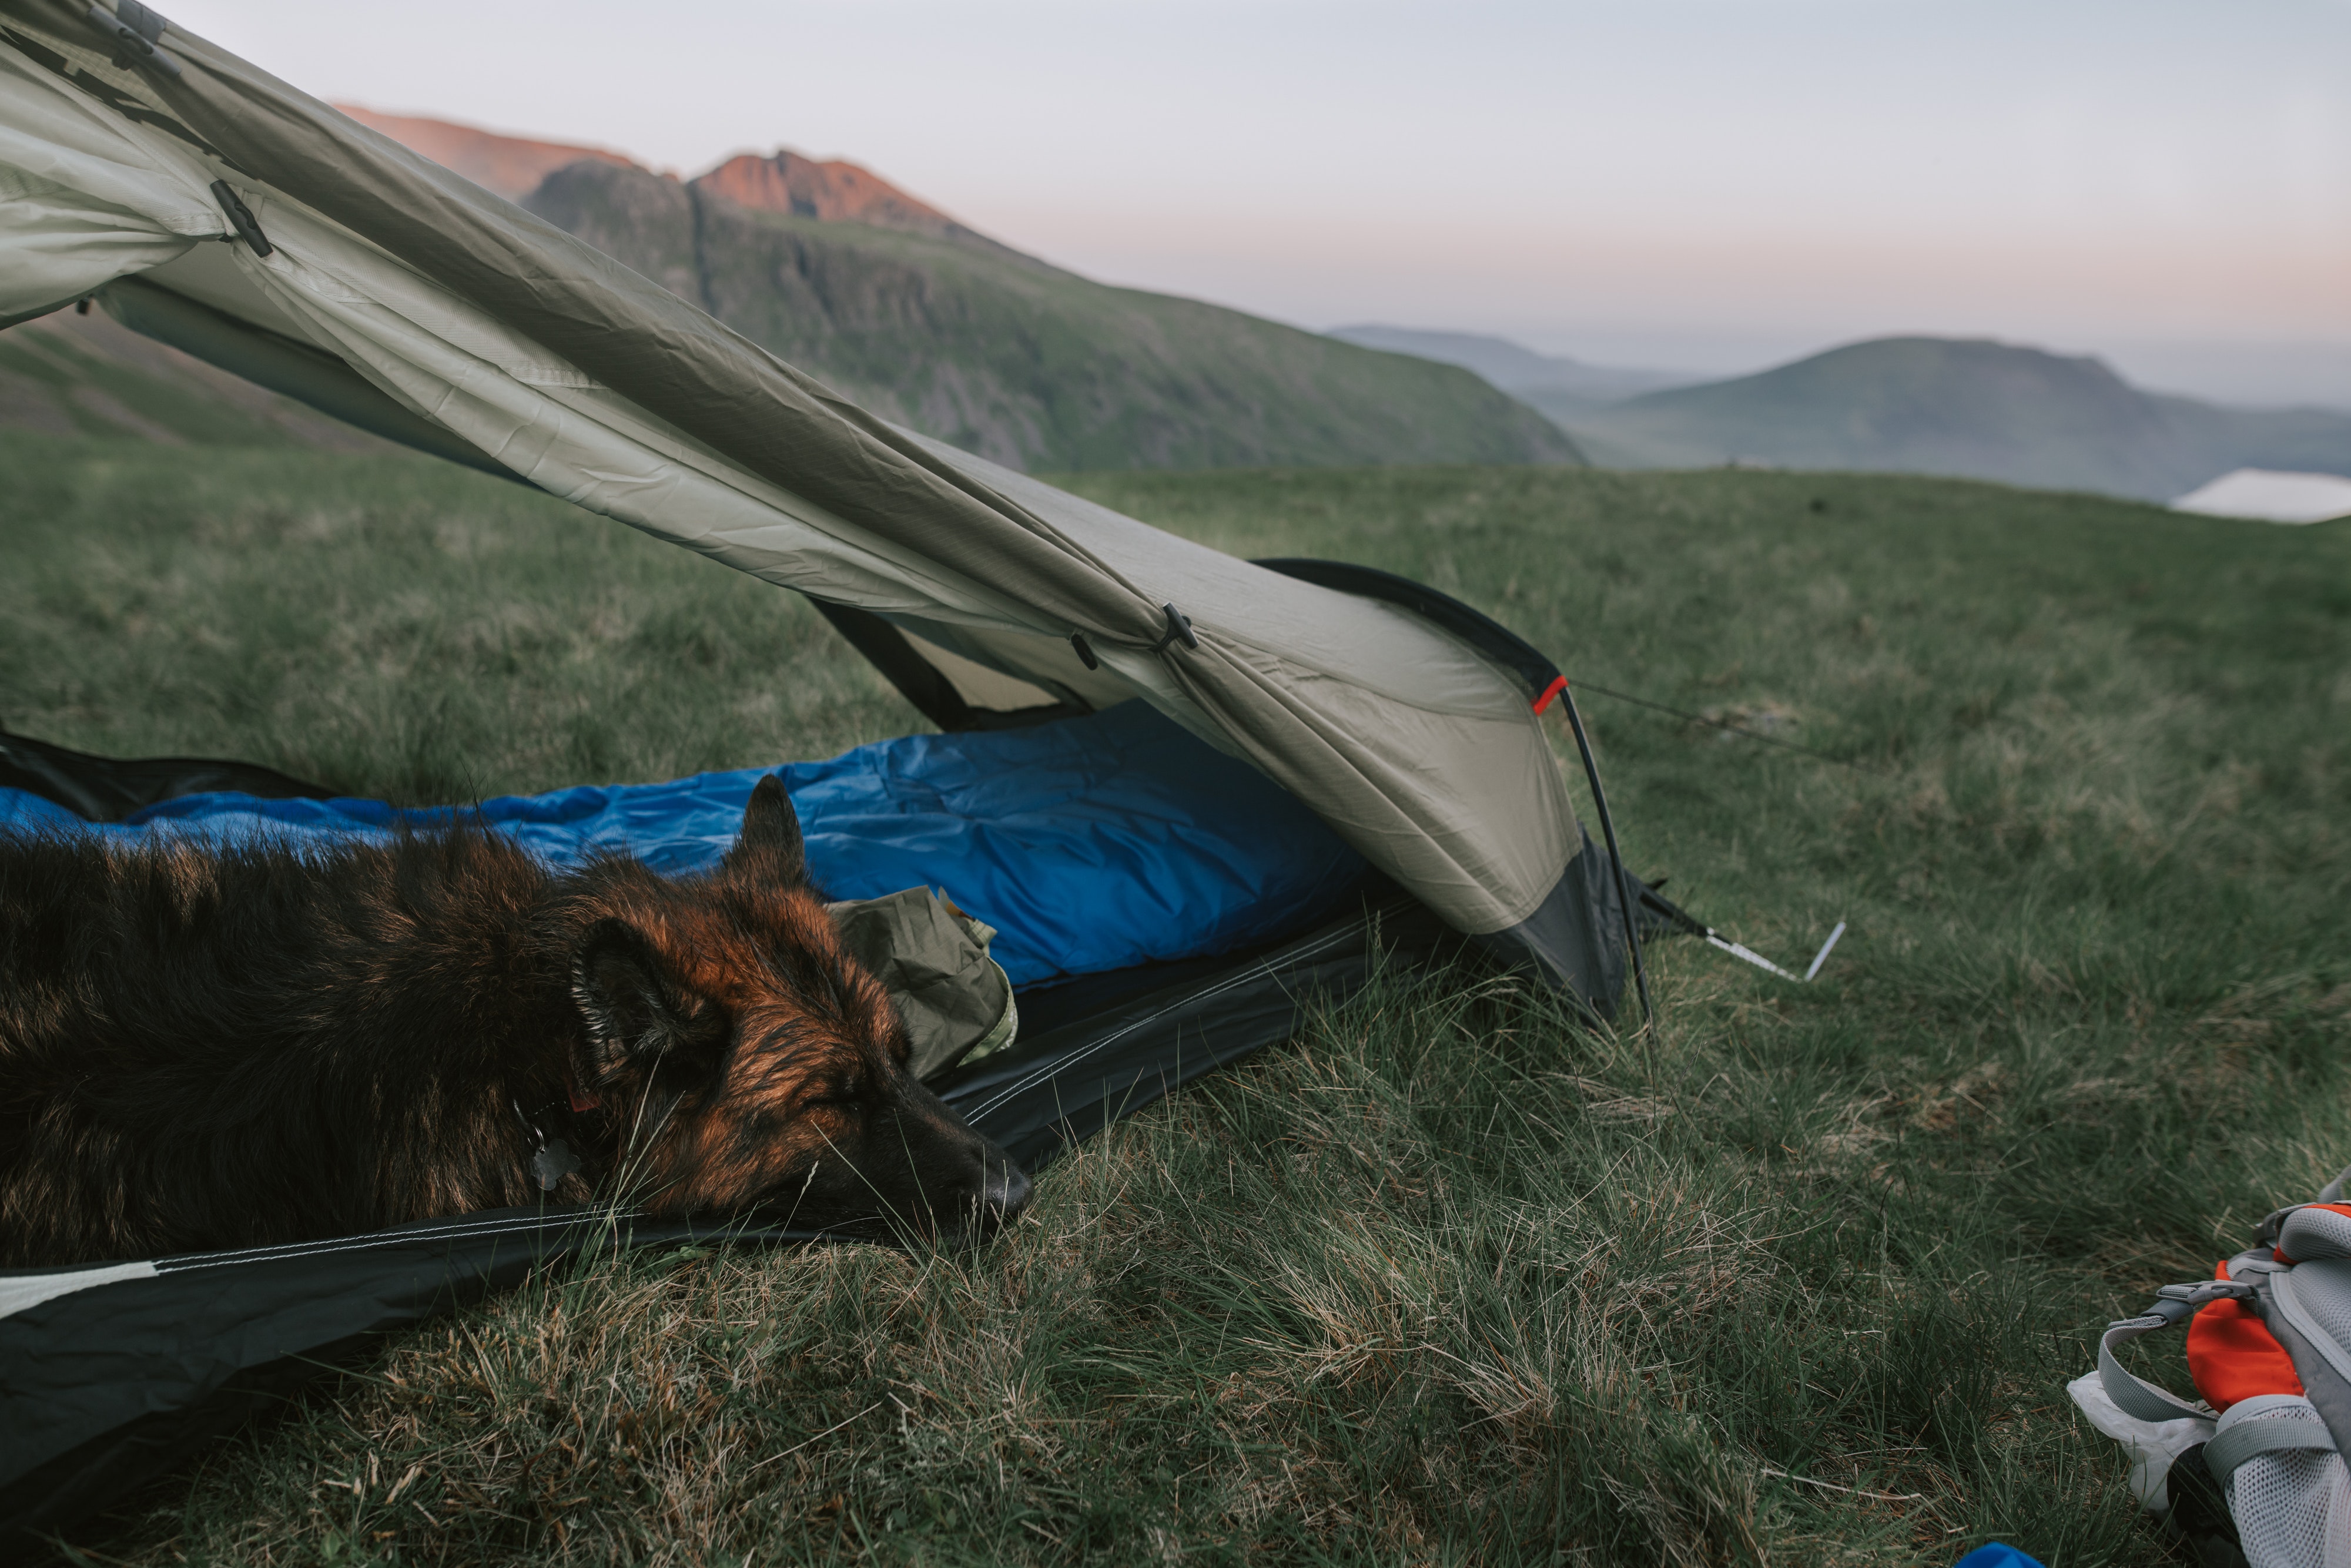 Camping mit Hund